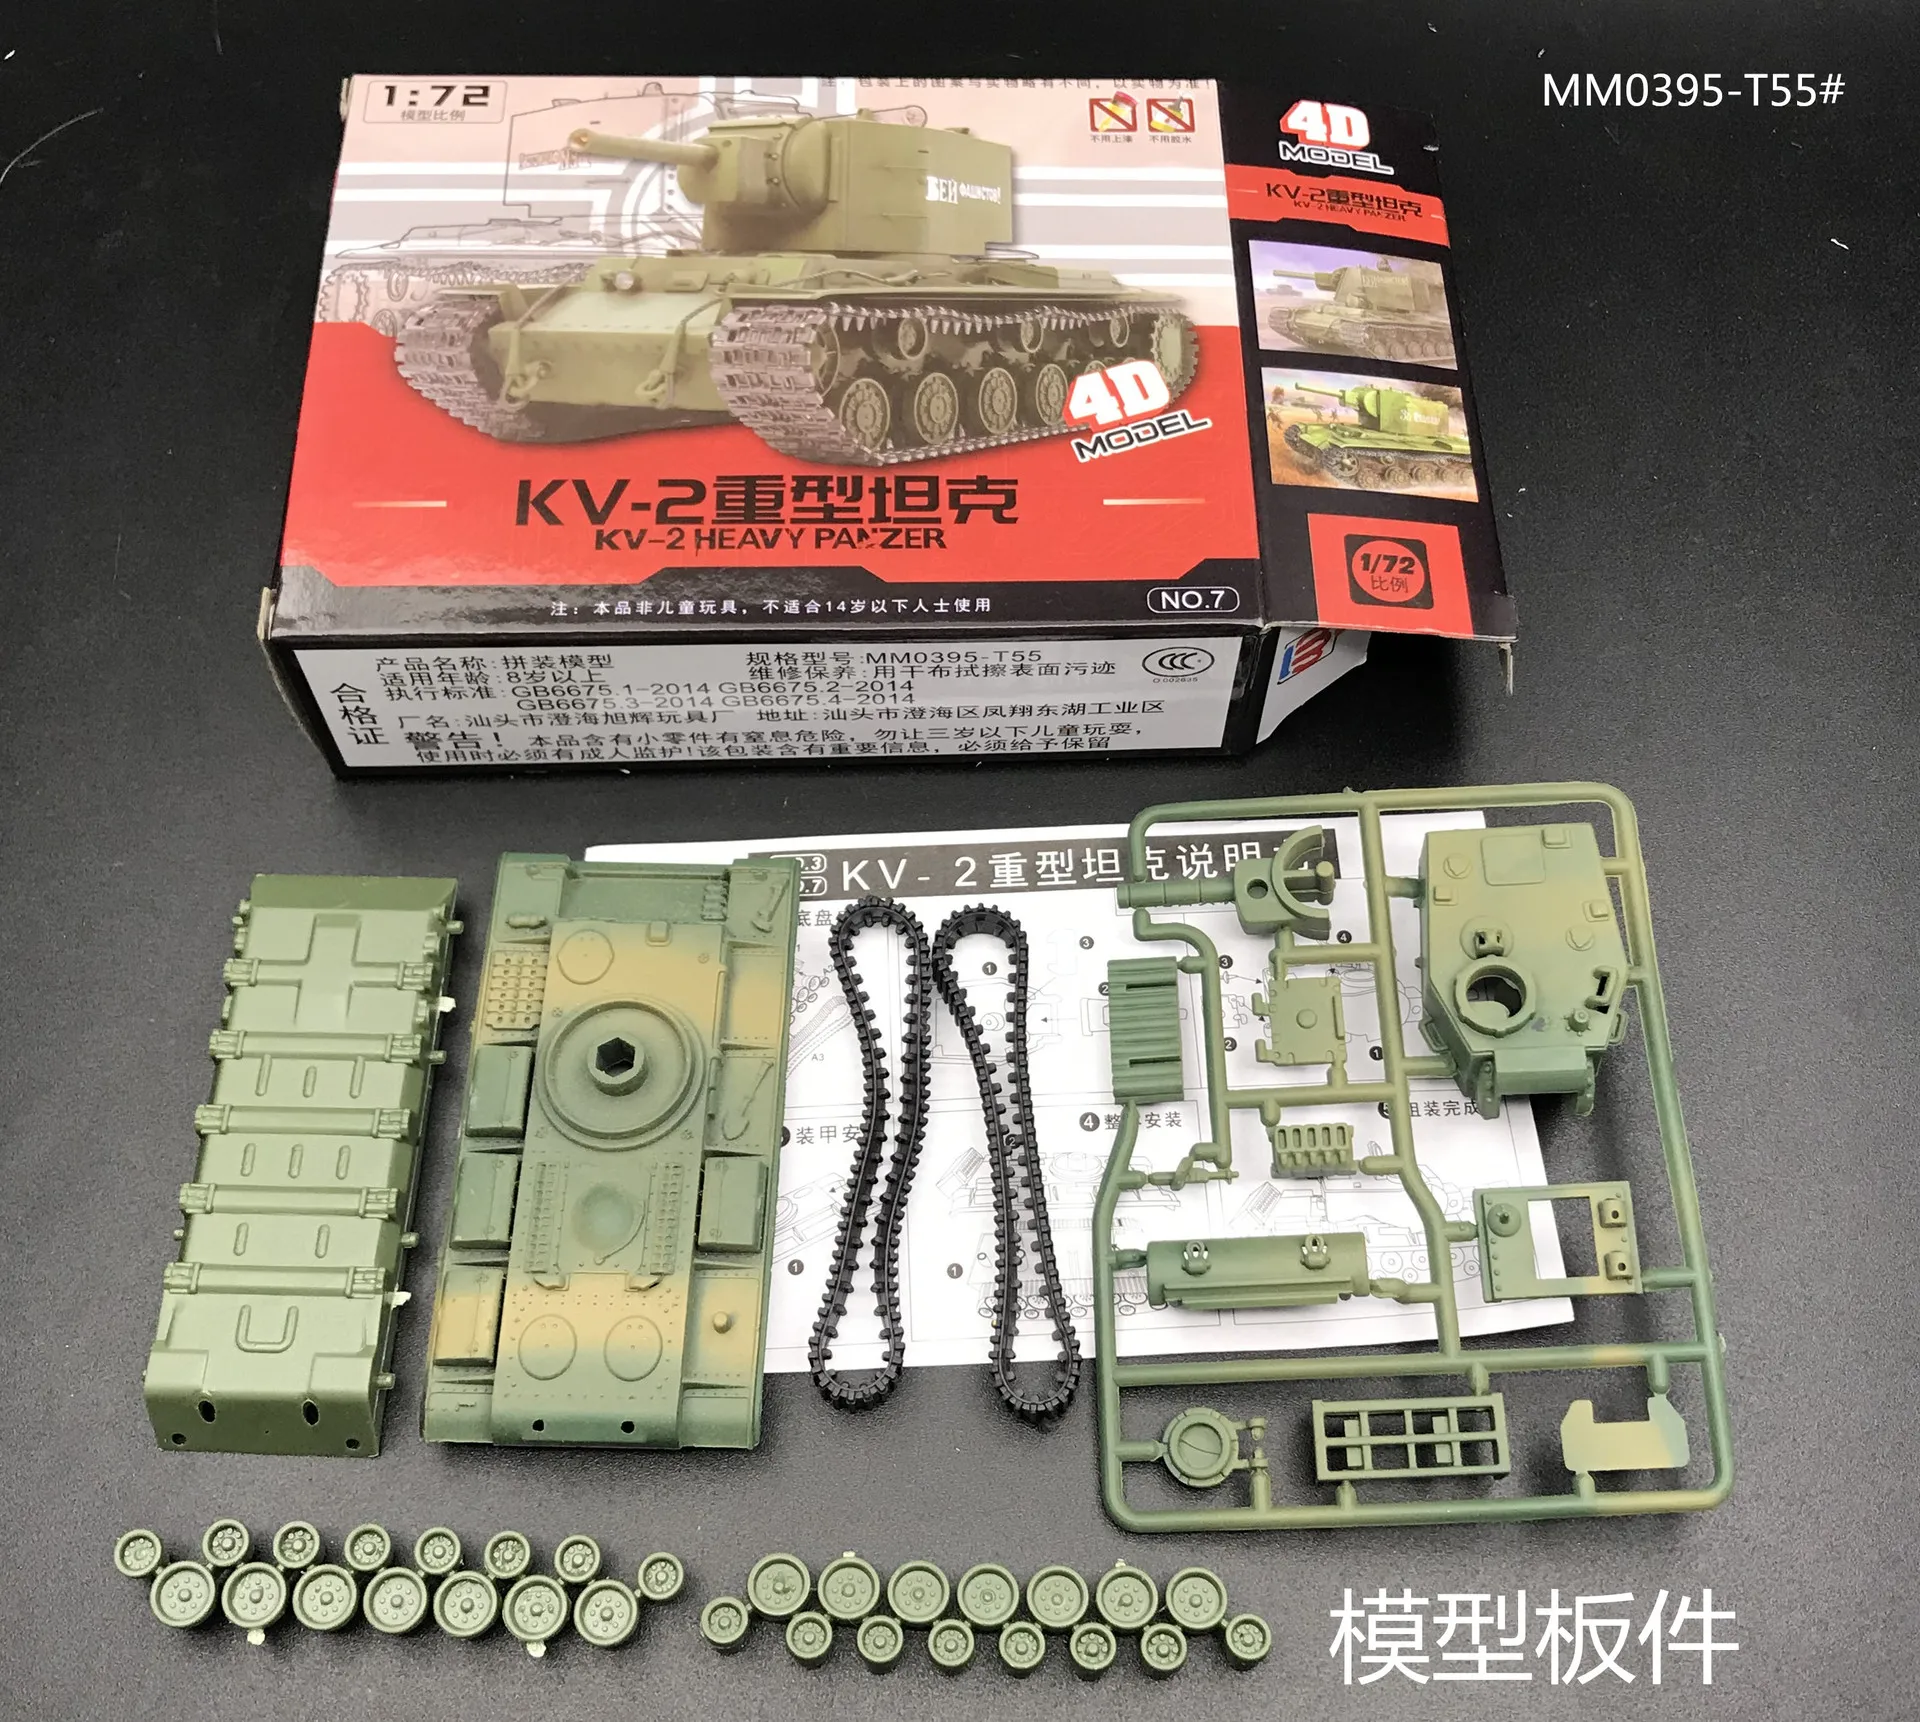 72   Scale   Action   Figure   Mini   Tank   Model       Model   DIY Details about   1 